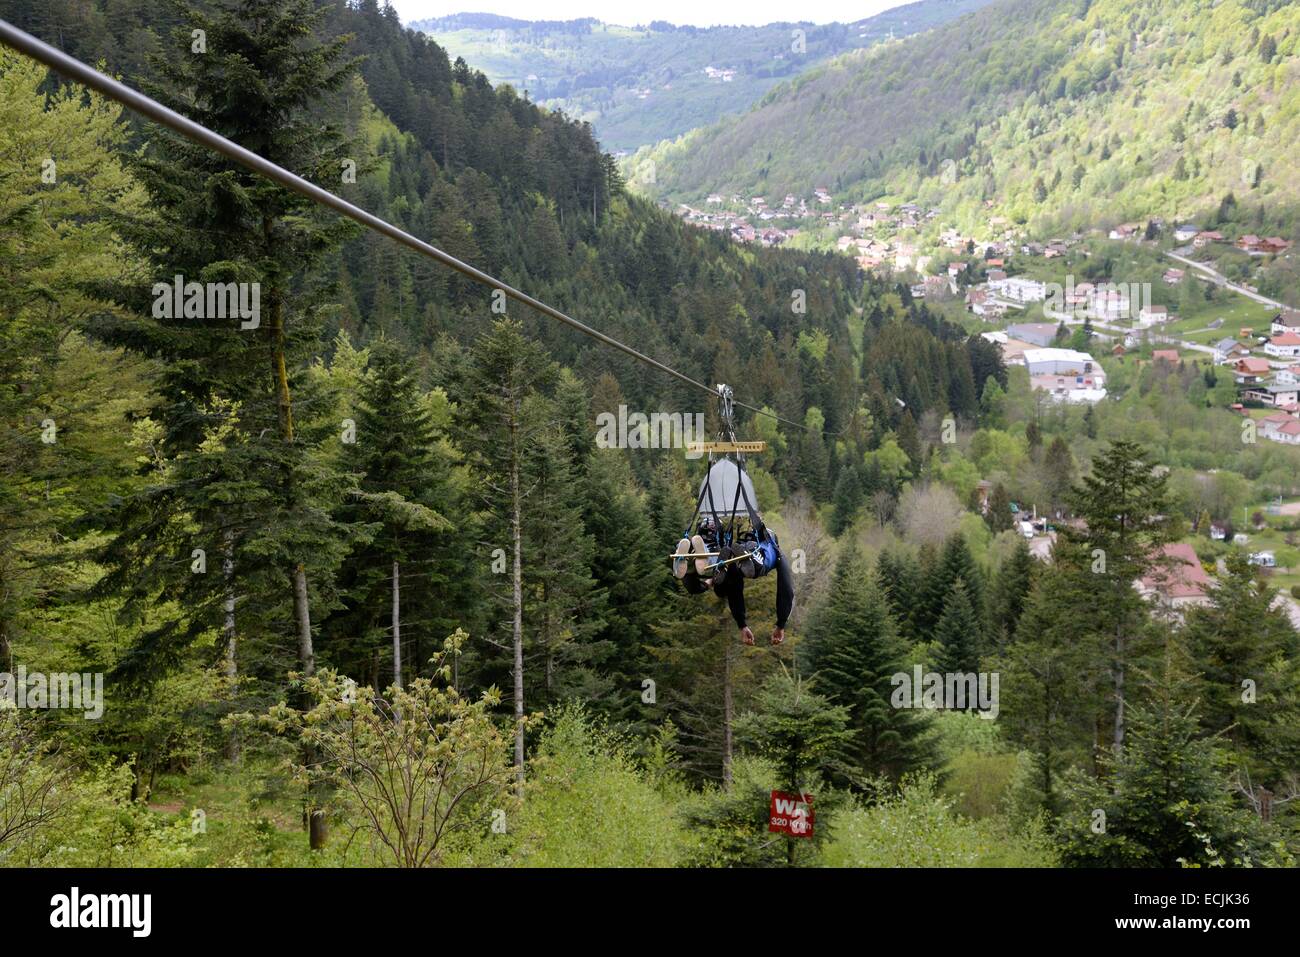 France, Vosges, La Bresse, outdoor activities Bol d Air, zip line Le Fantasticable Stock Photo